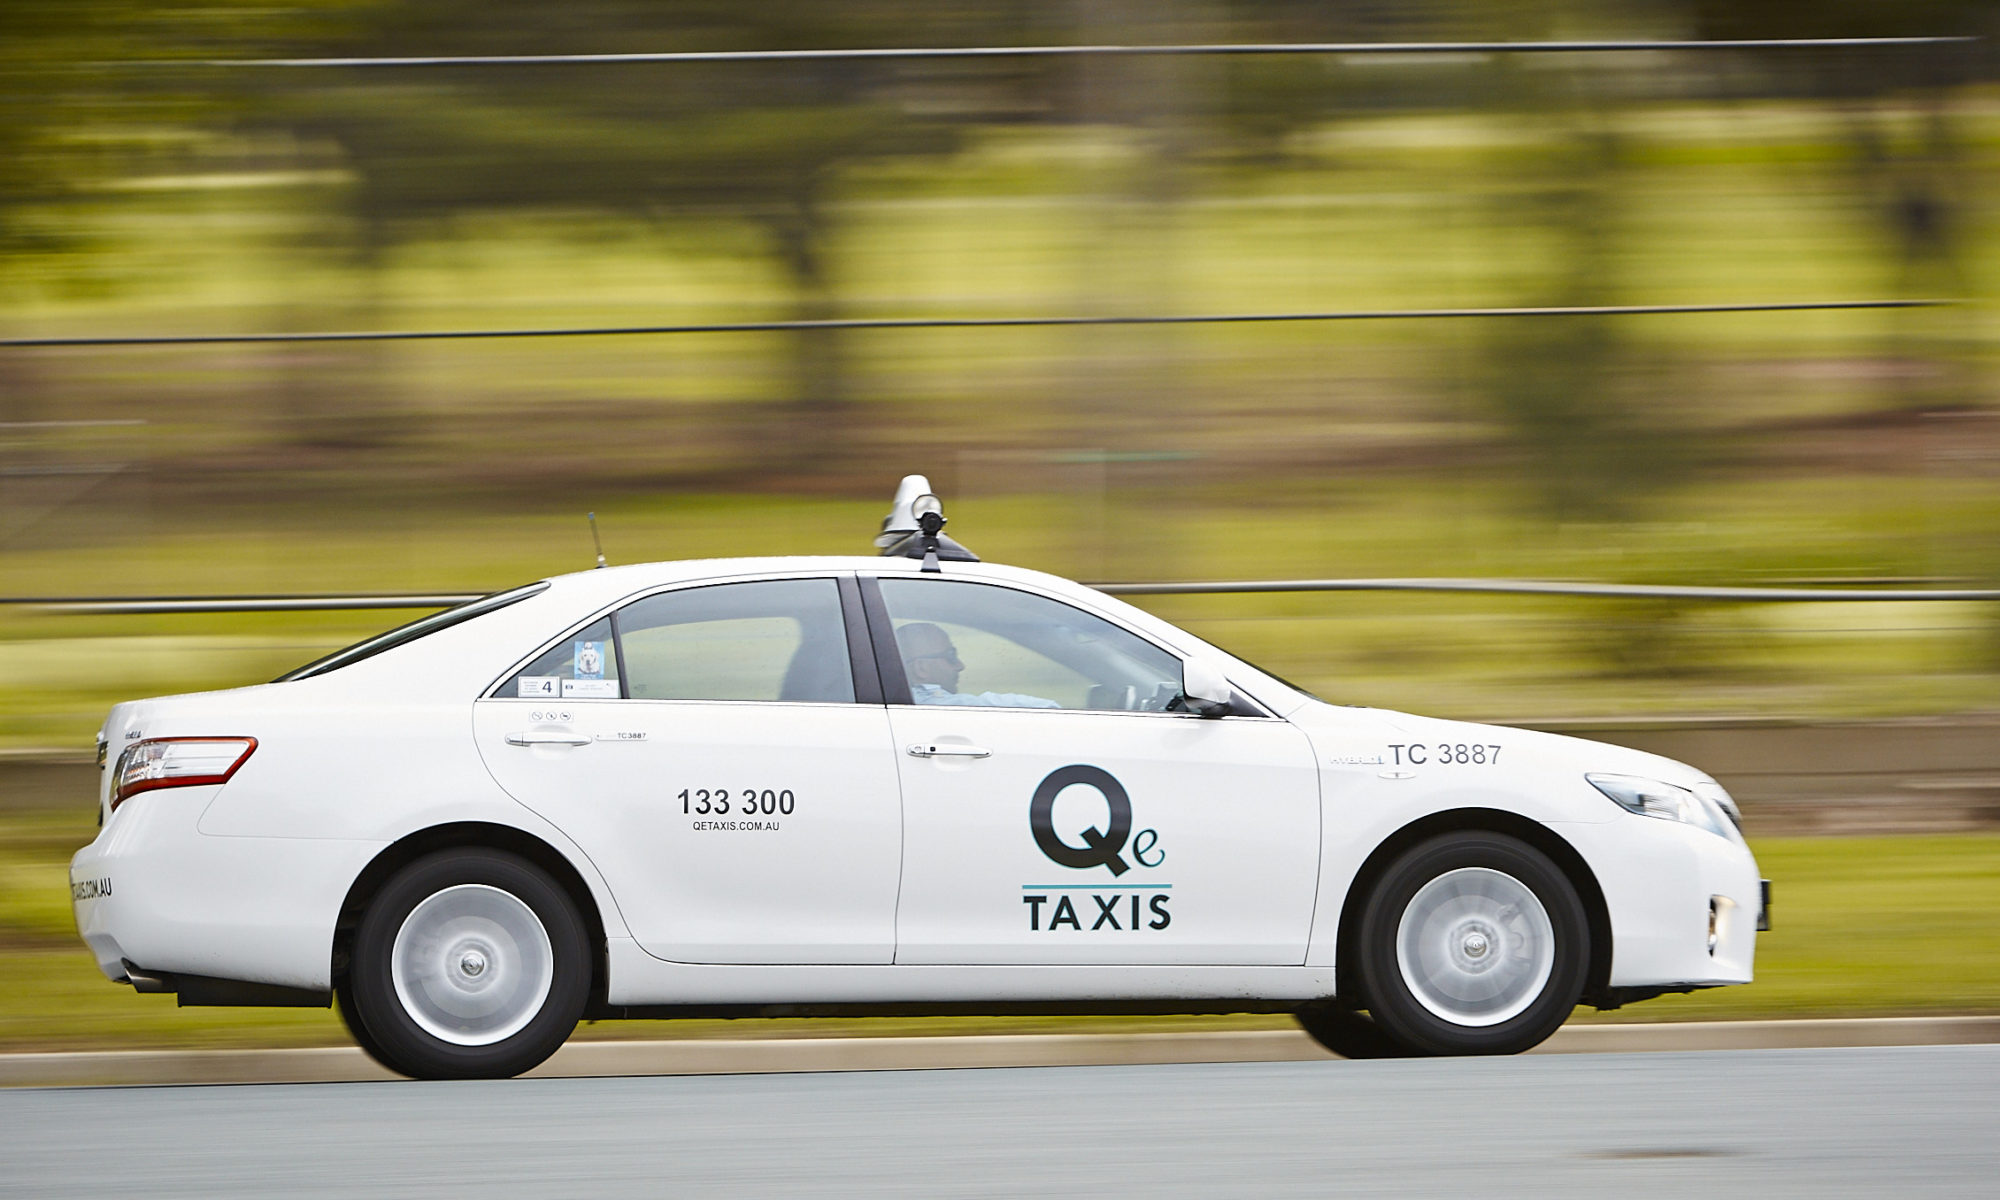 Q e Taxis driving through Queanbeyan